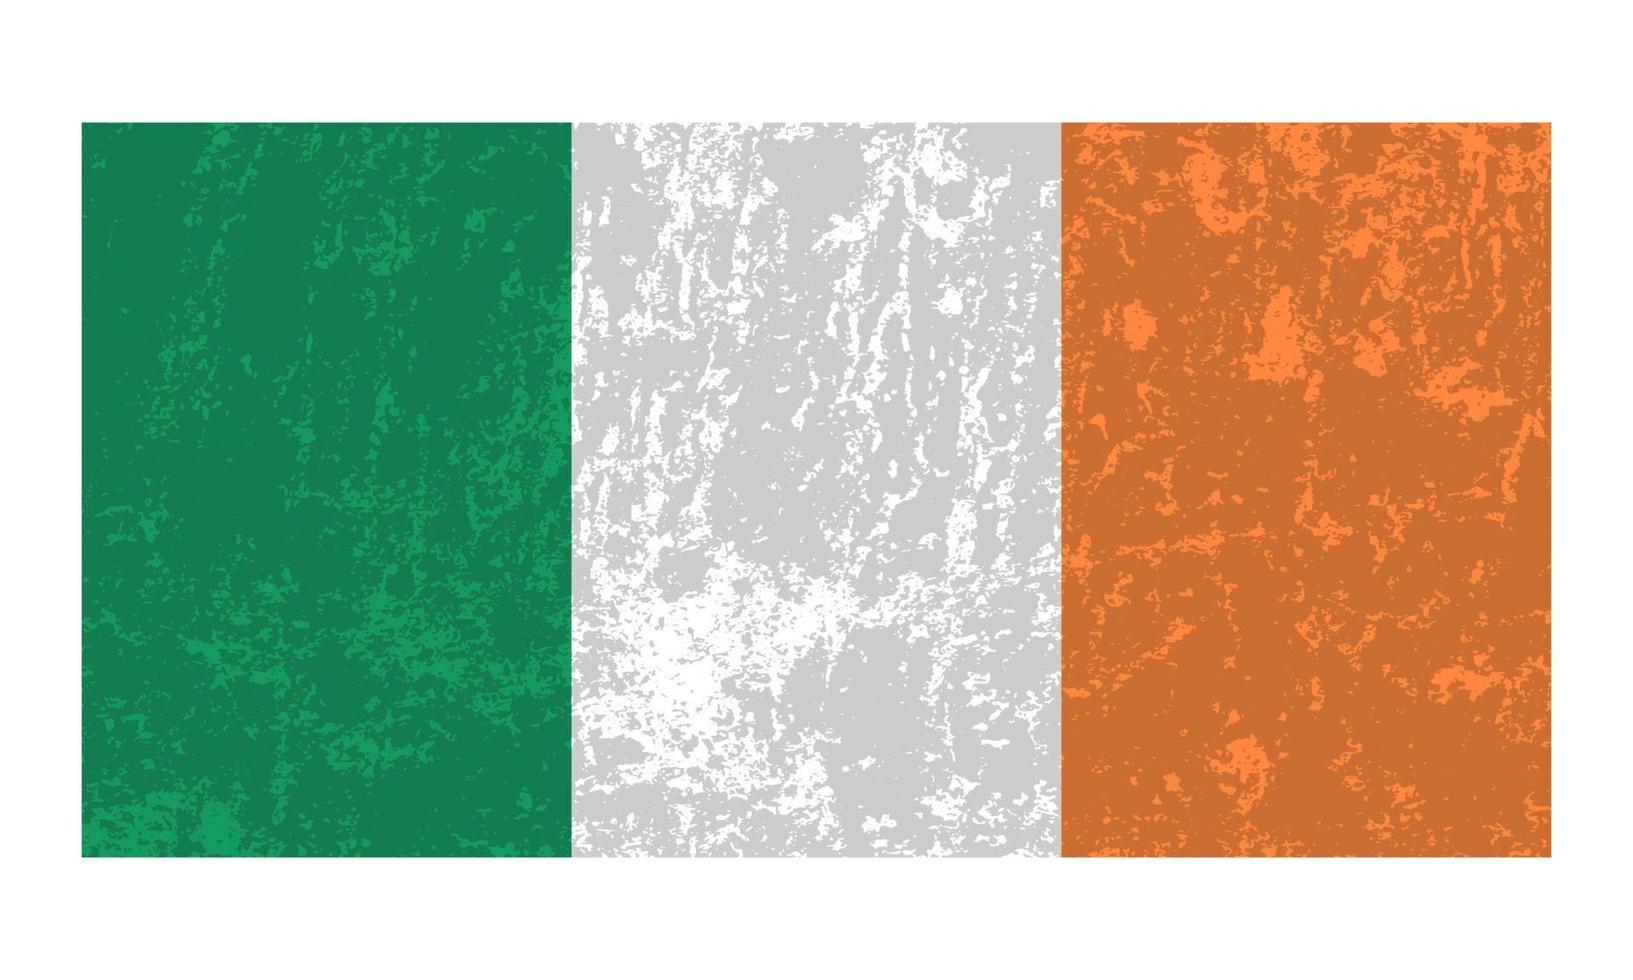 Ierland grunge vlag, officieel kleuren en proportie. vector illustratie.